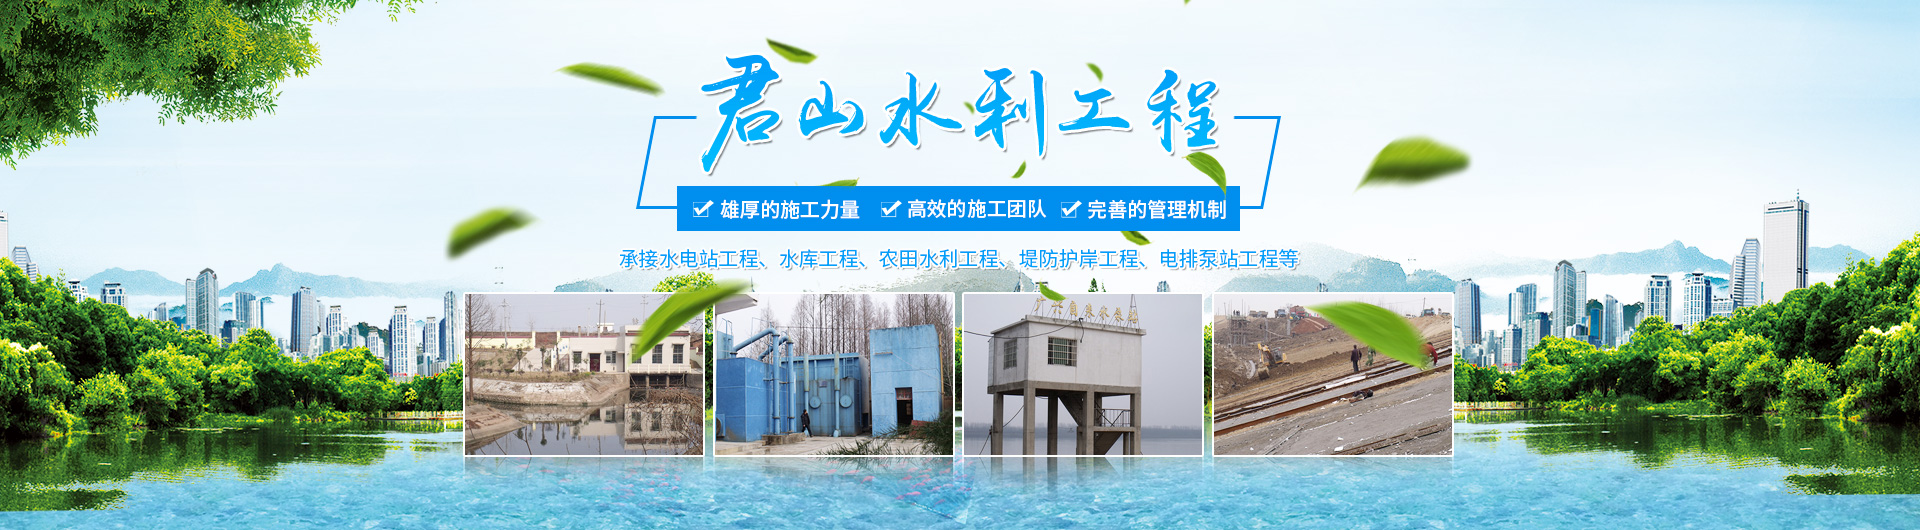 岳阳市君山水利建设有限公司_岳阳水利工程|坝体建筑|土石方工程|泵站